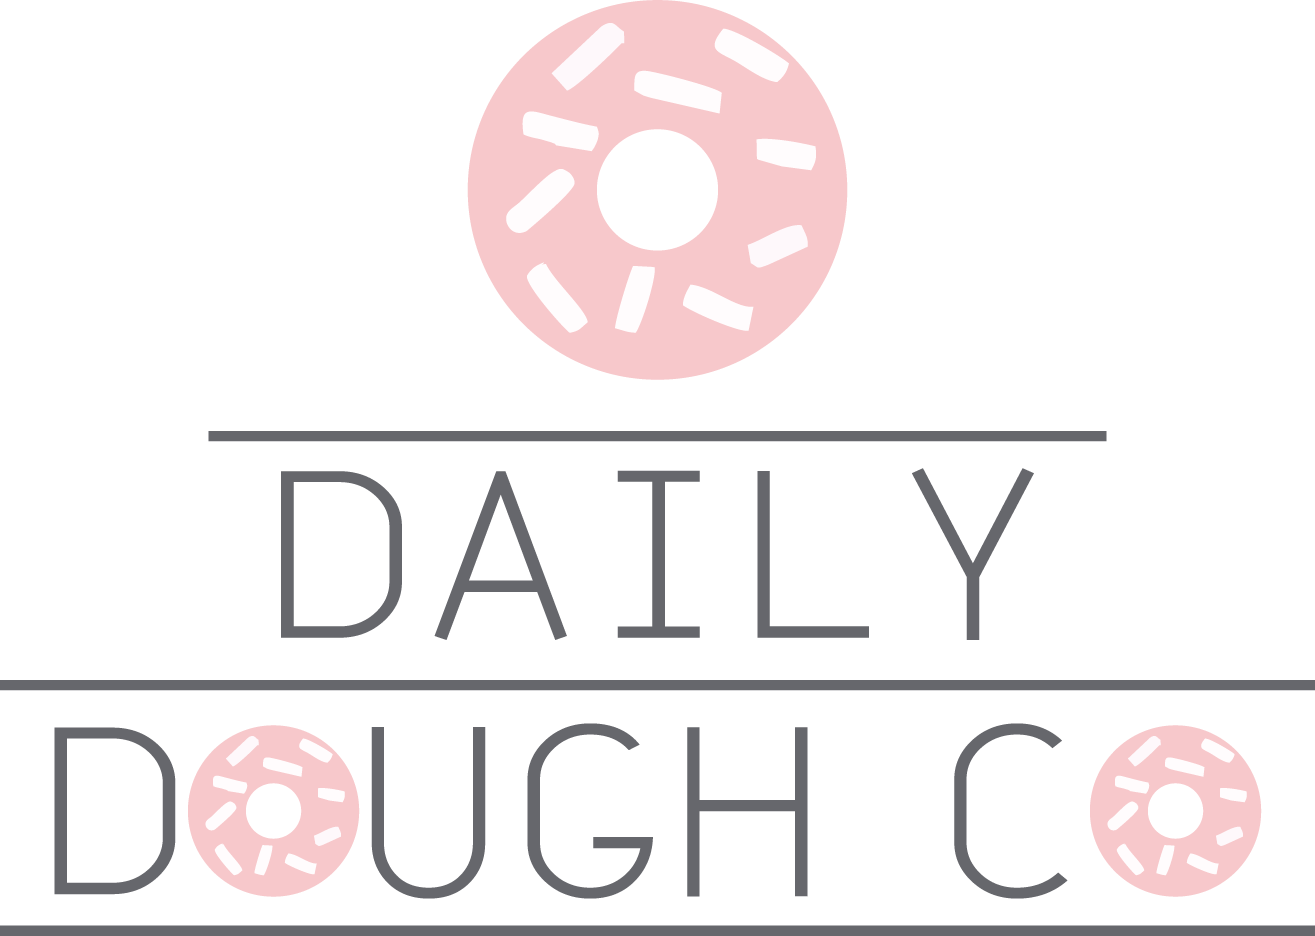 Daily Dough Co